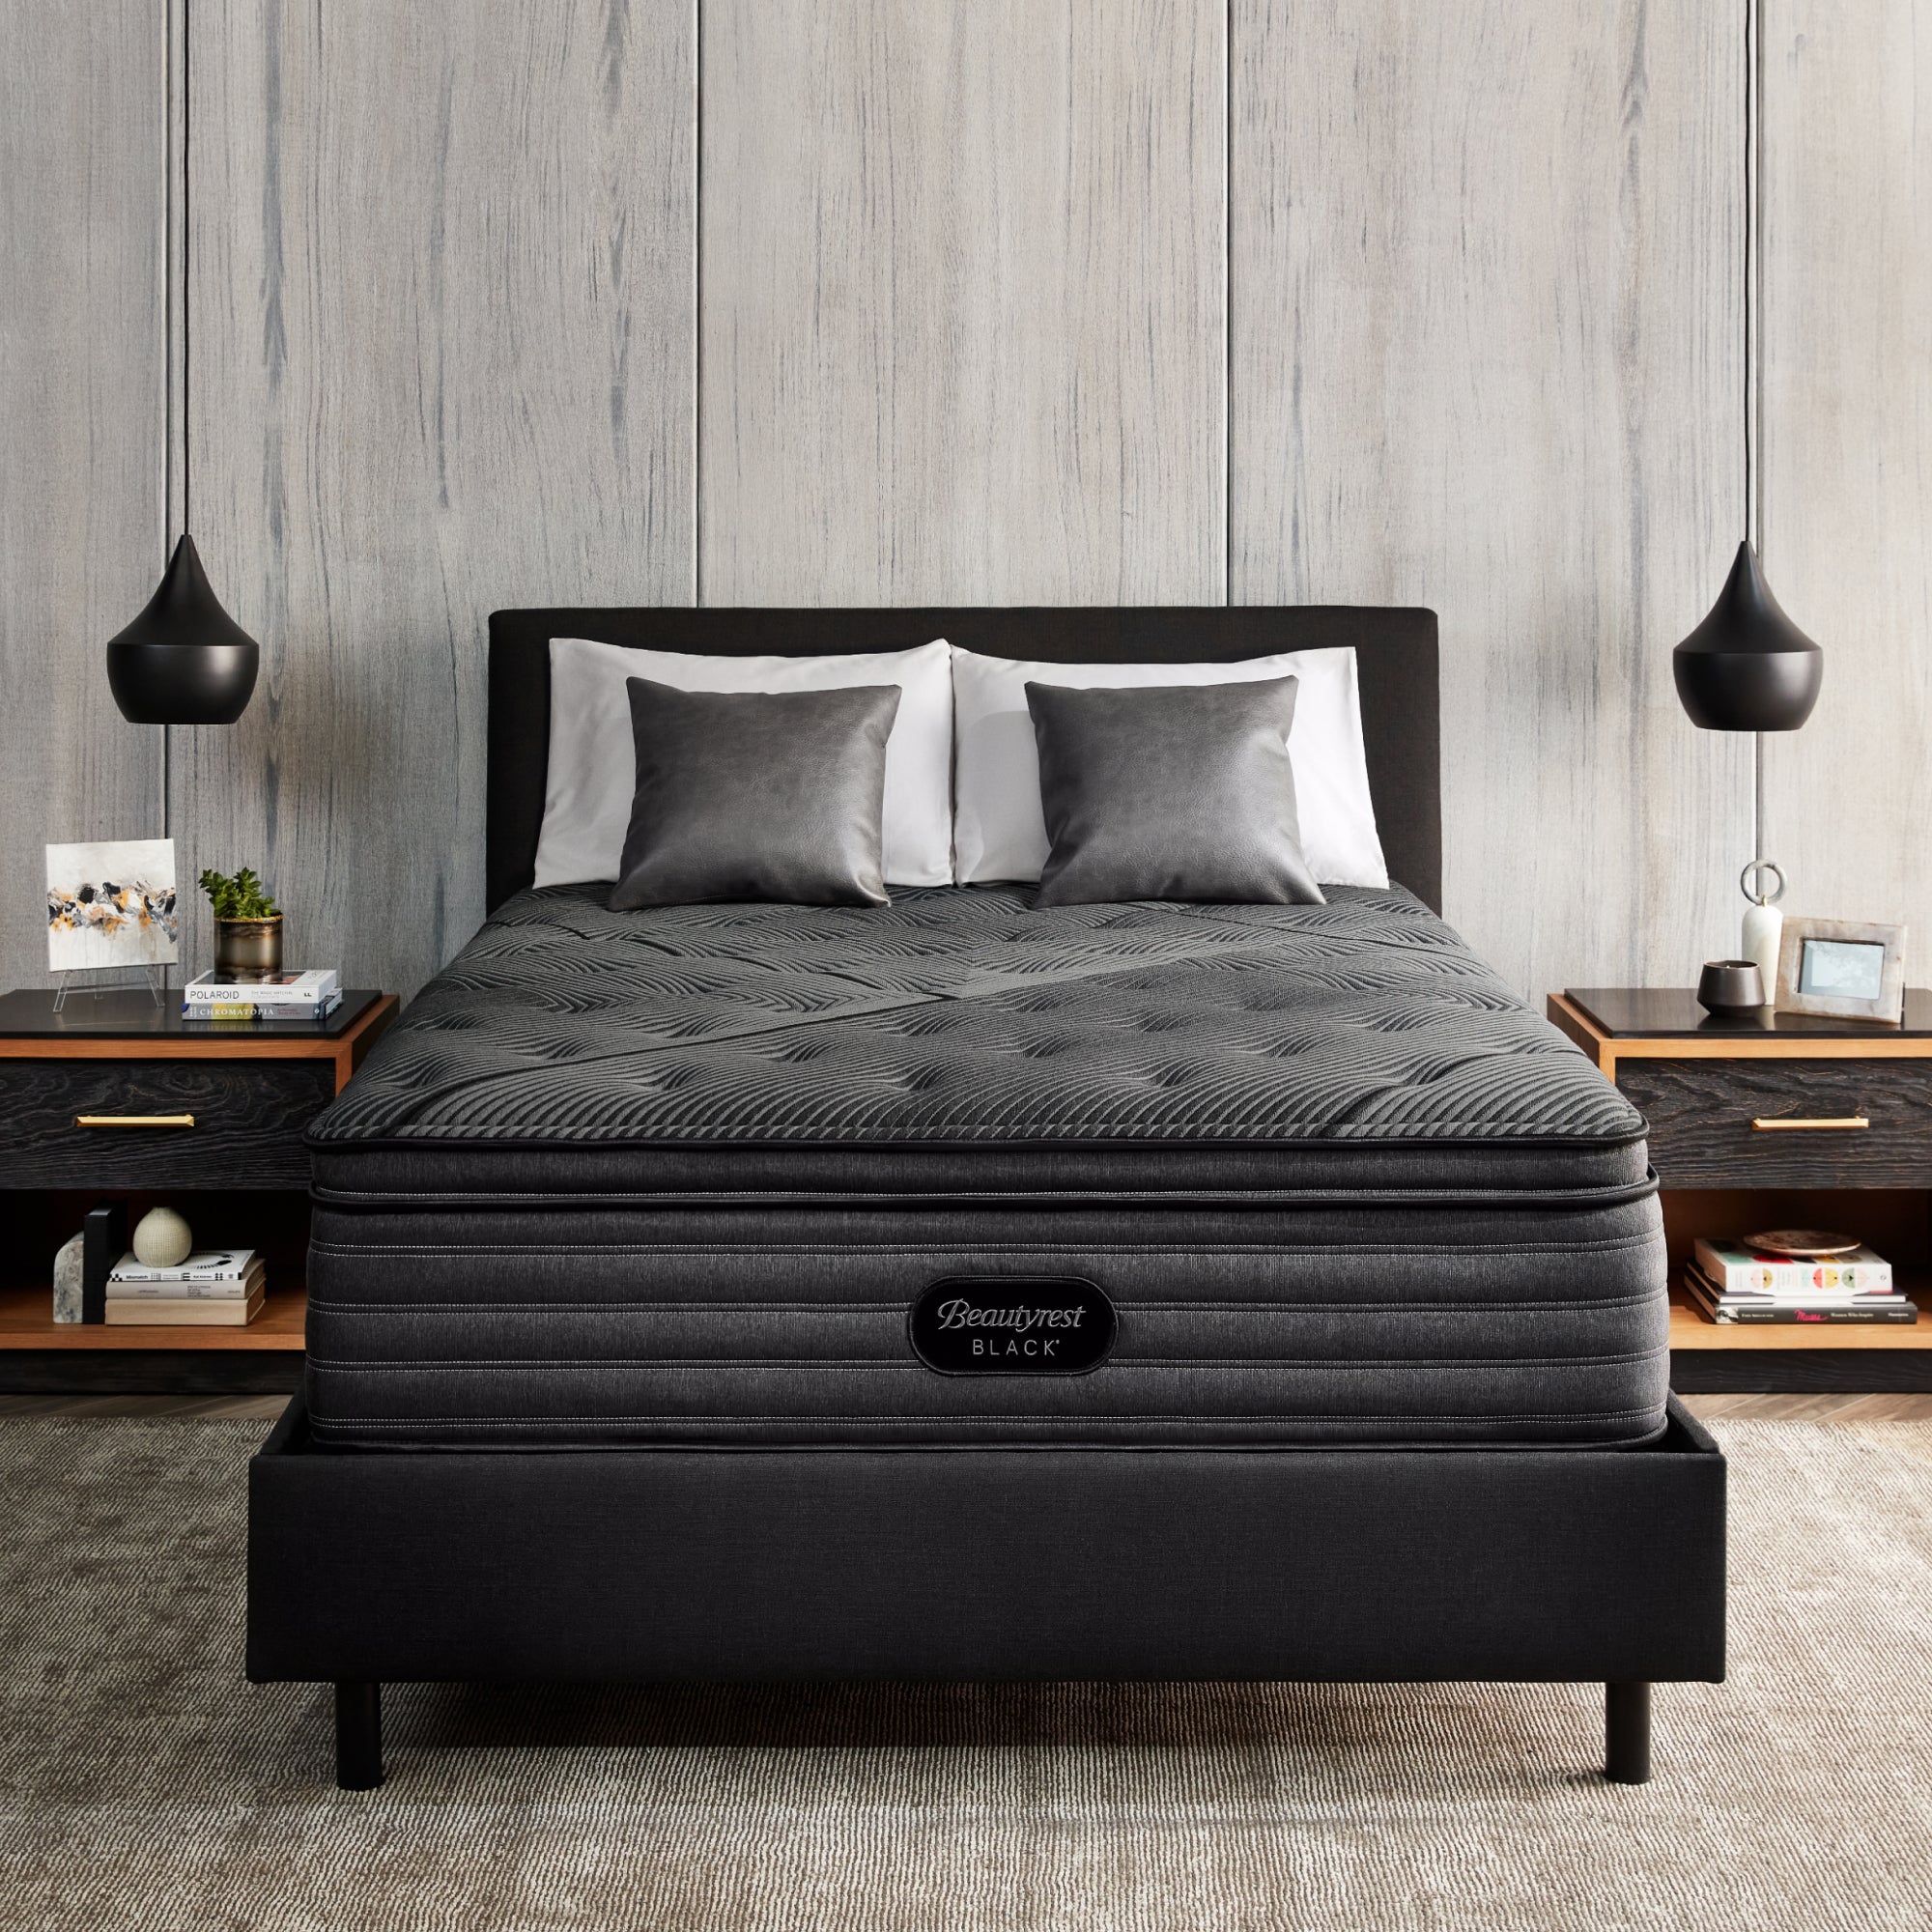 The Beautyrest Black enhanced l-class extra medium mattress in a bedroom||series: enhanced l-class || feel: medium pillow top